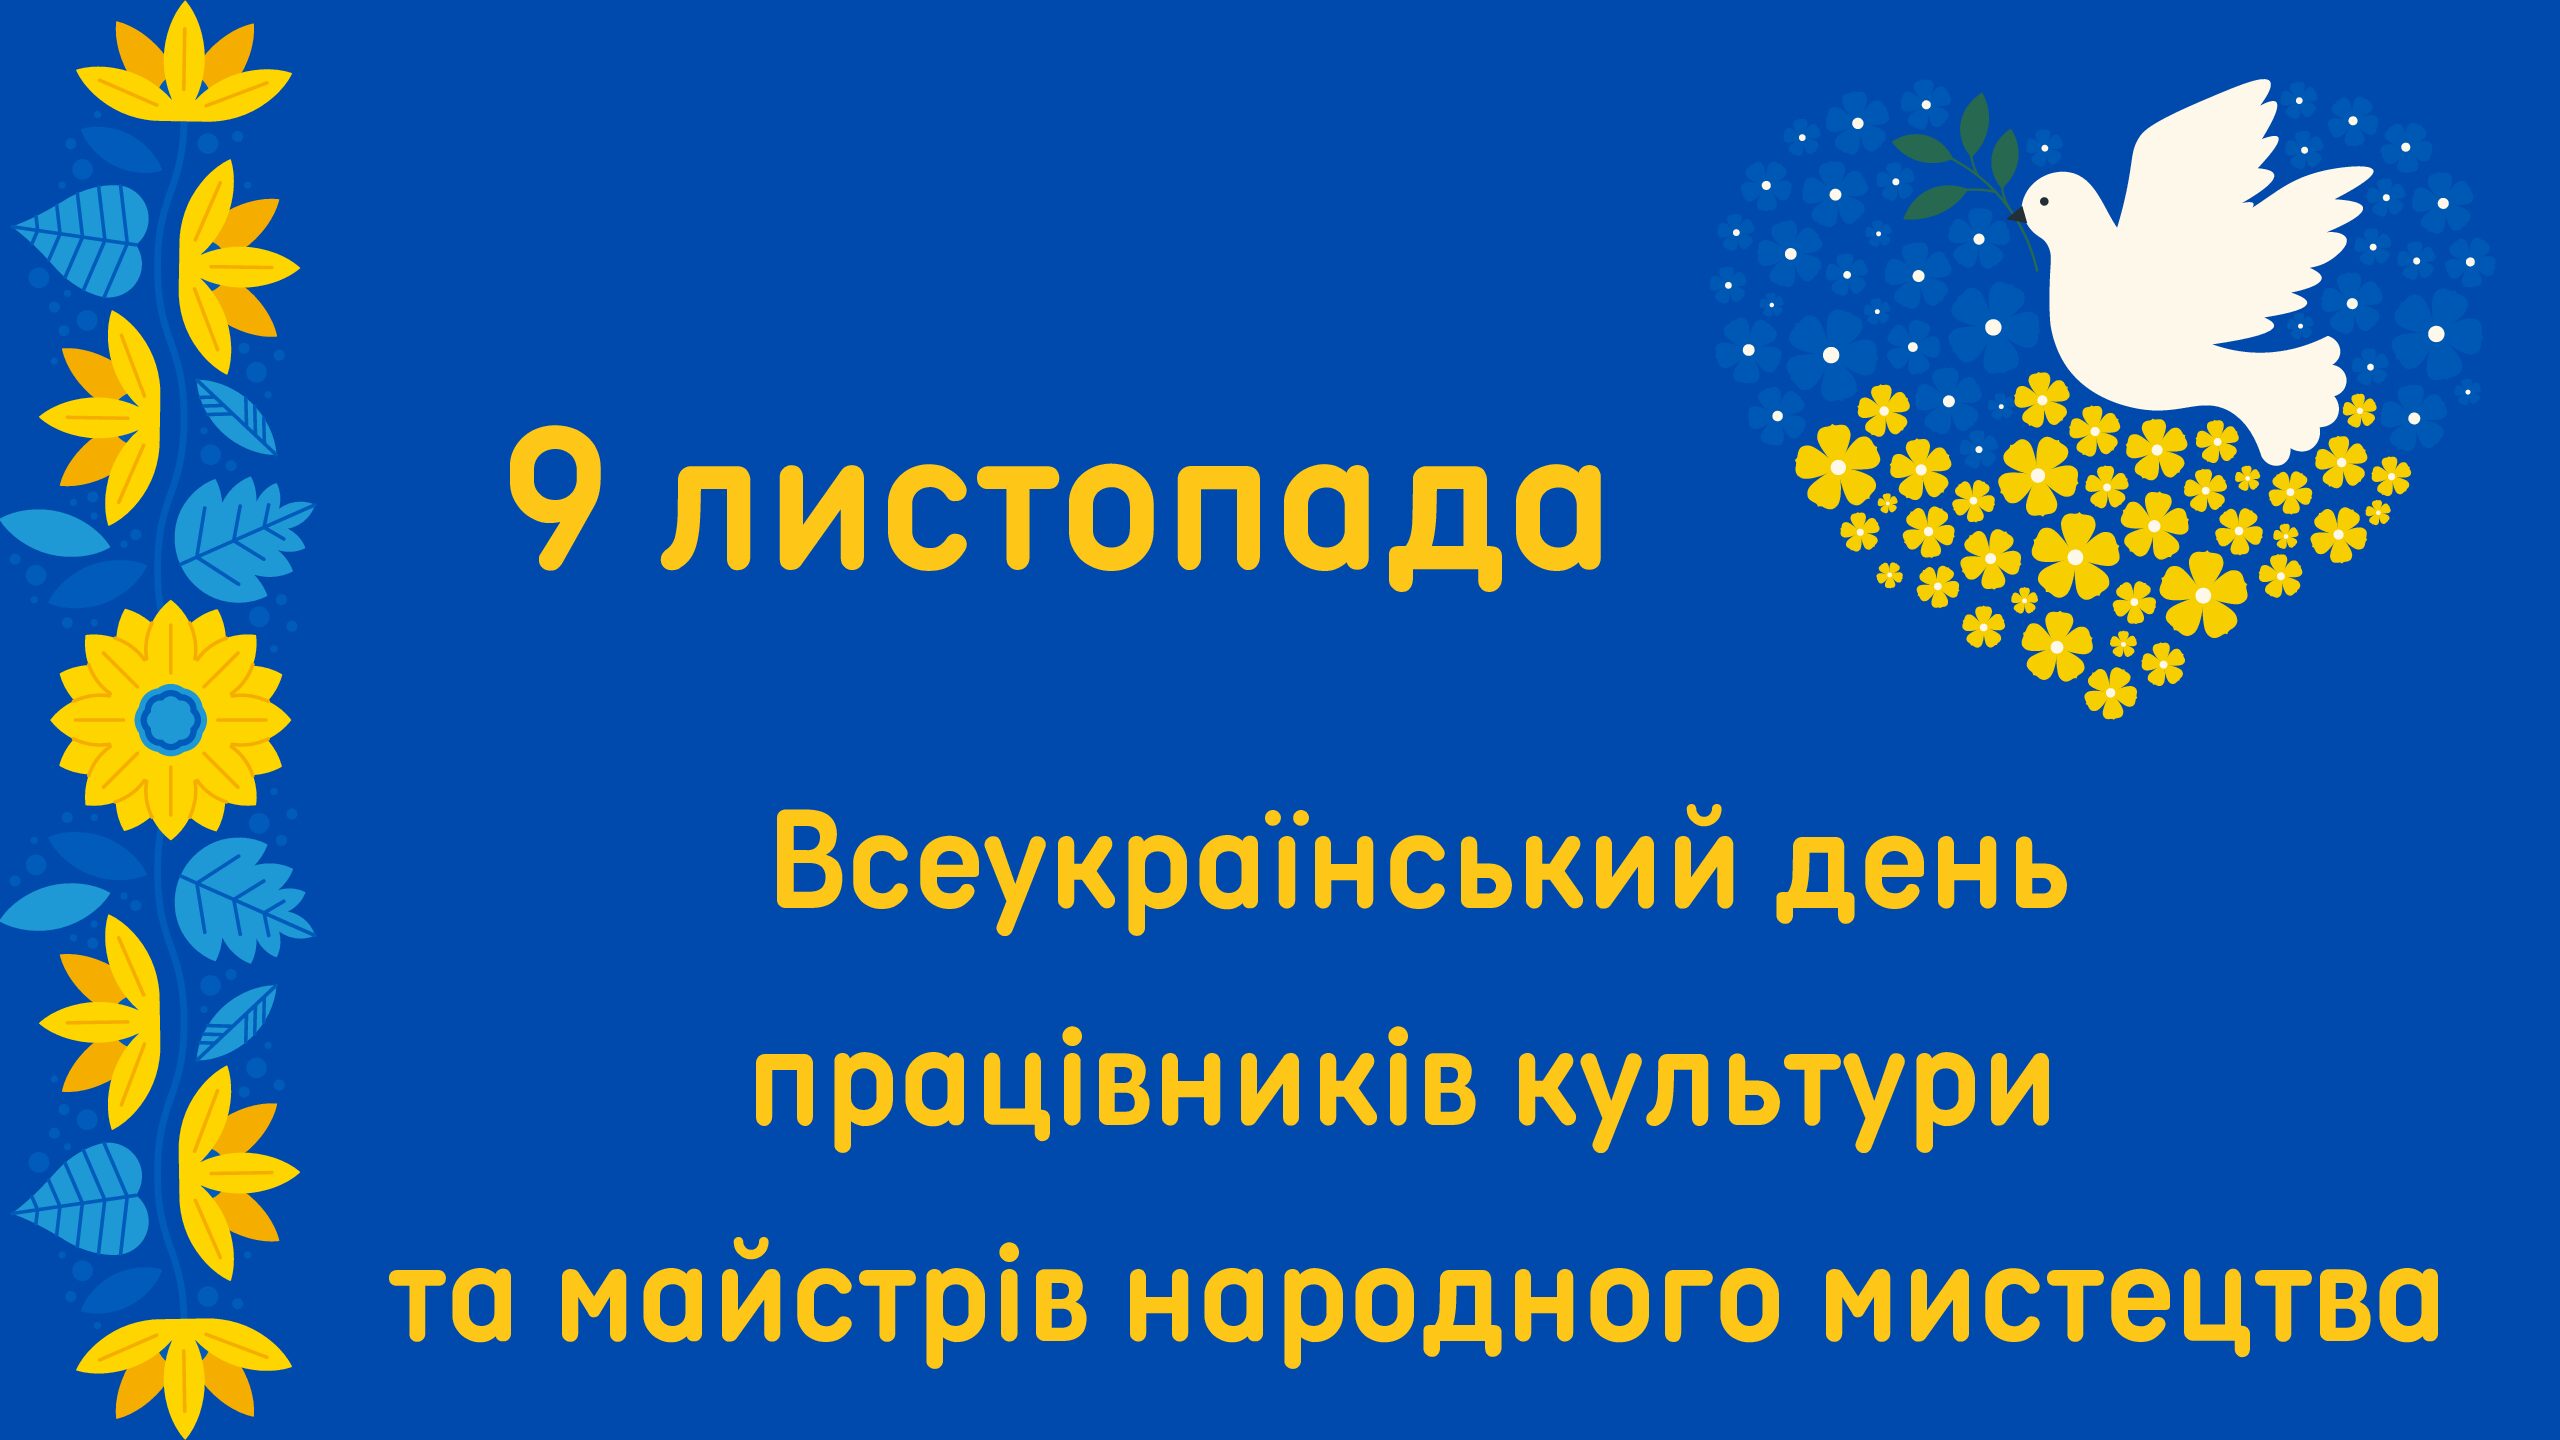 9 листопада – Всеукраїнський день працівників культури та майстрів народного мистецтва